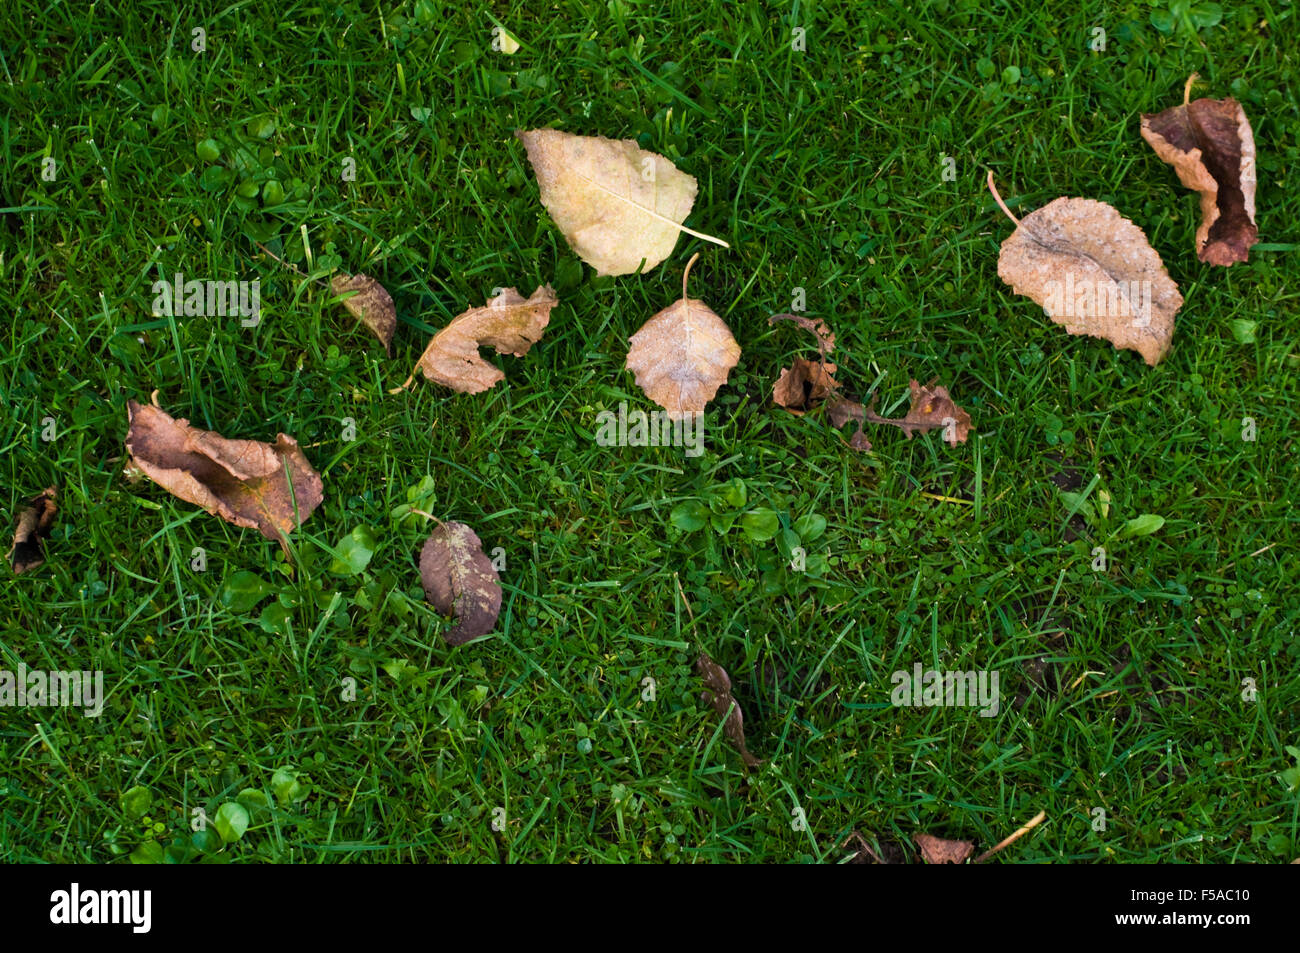 Feuilles mortes se trouvant sur l'herbe verte Banque D'Images